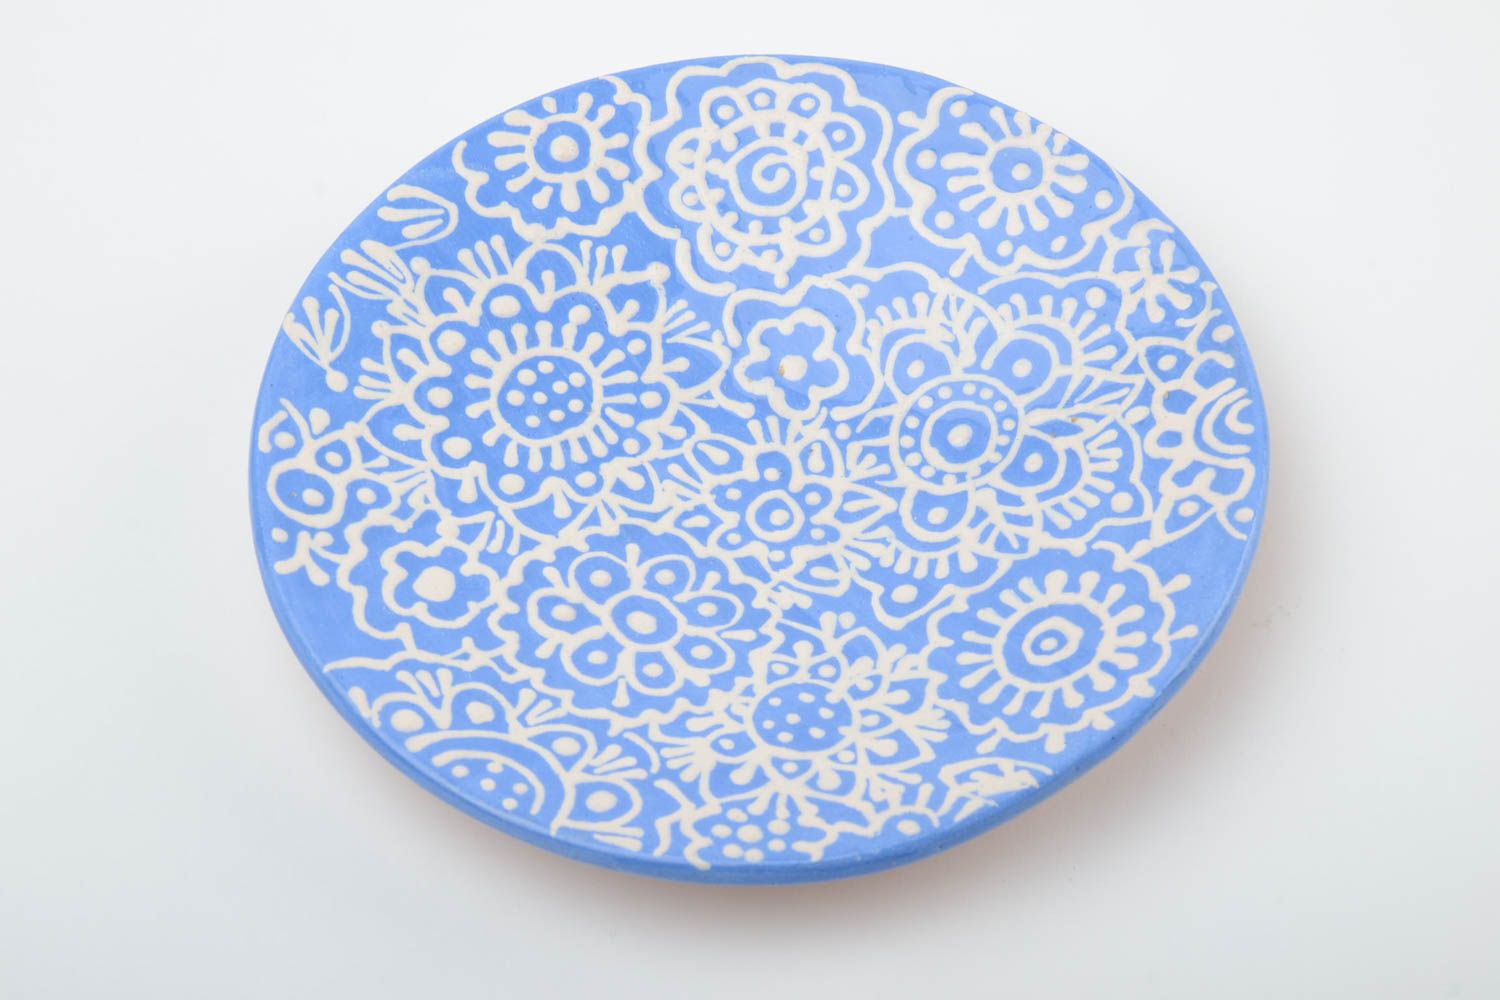 Handmade Keramik Untertasse mit Muster in Blau und Weiß klein schön glasiert für Teeparty foto 2